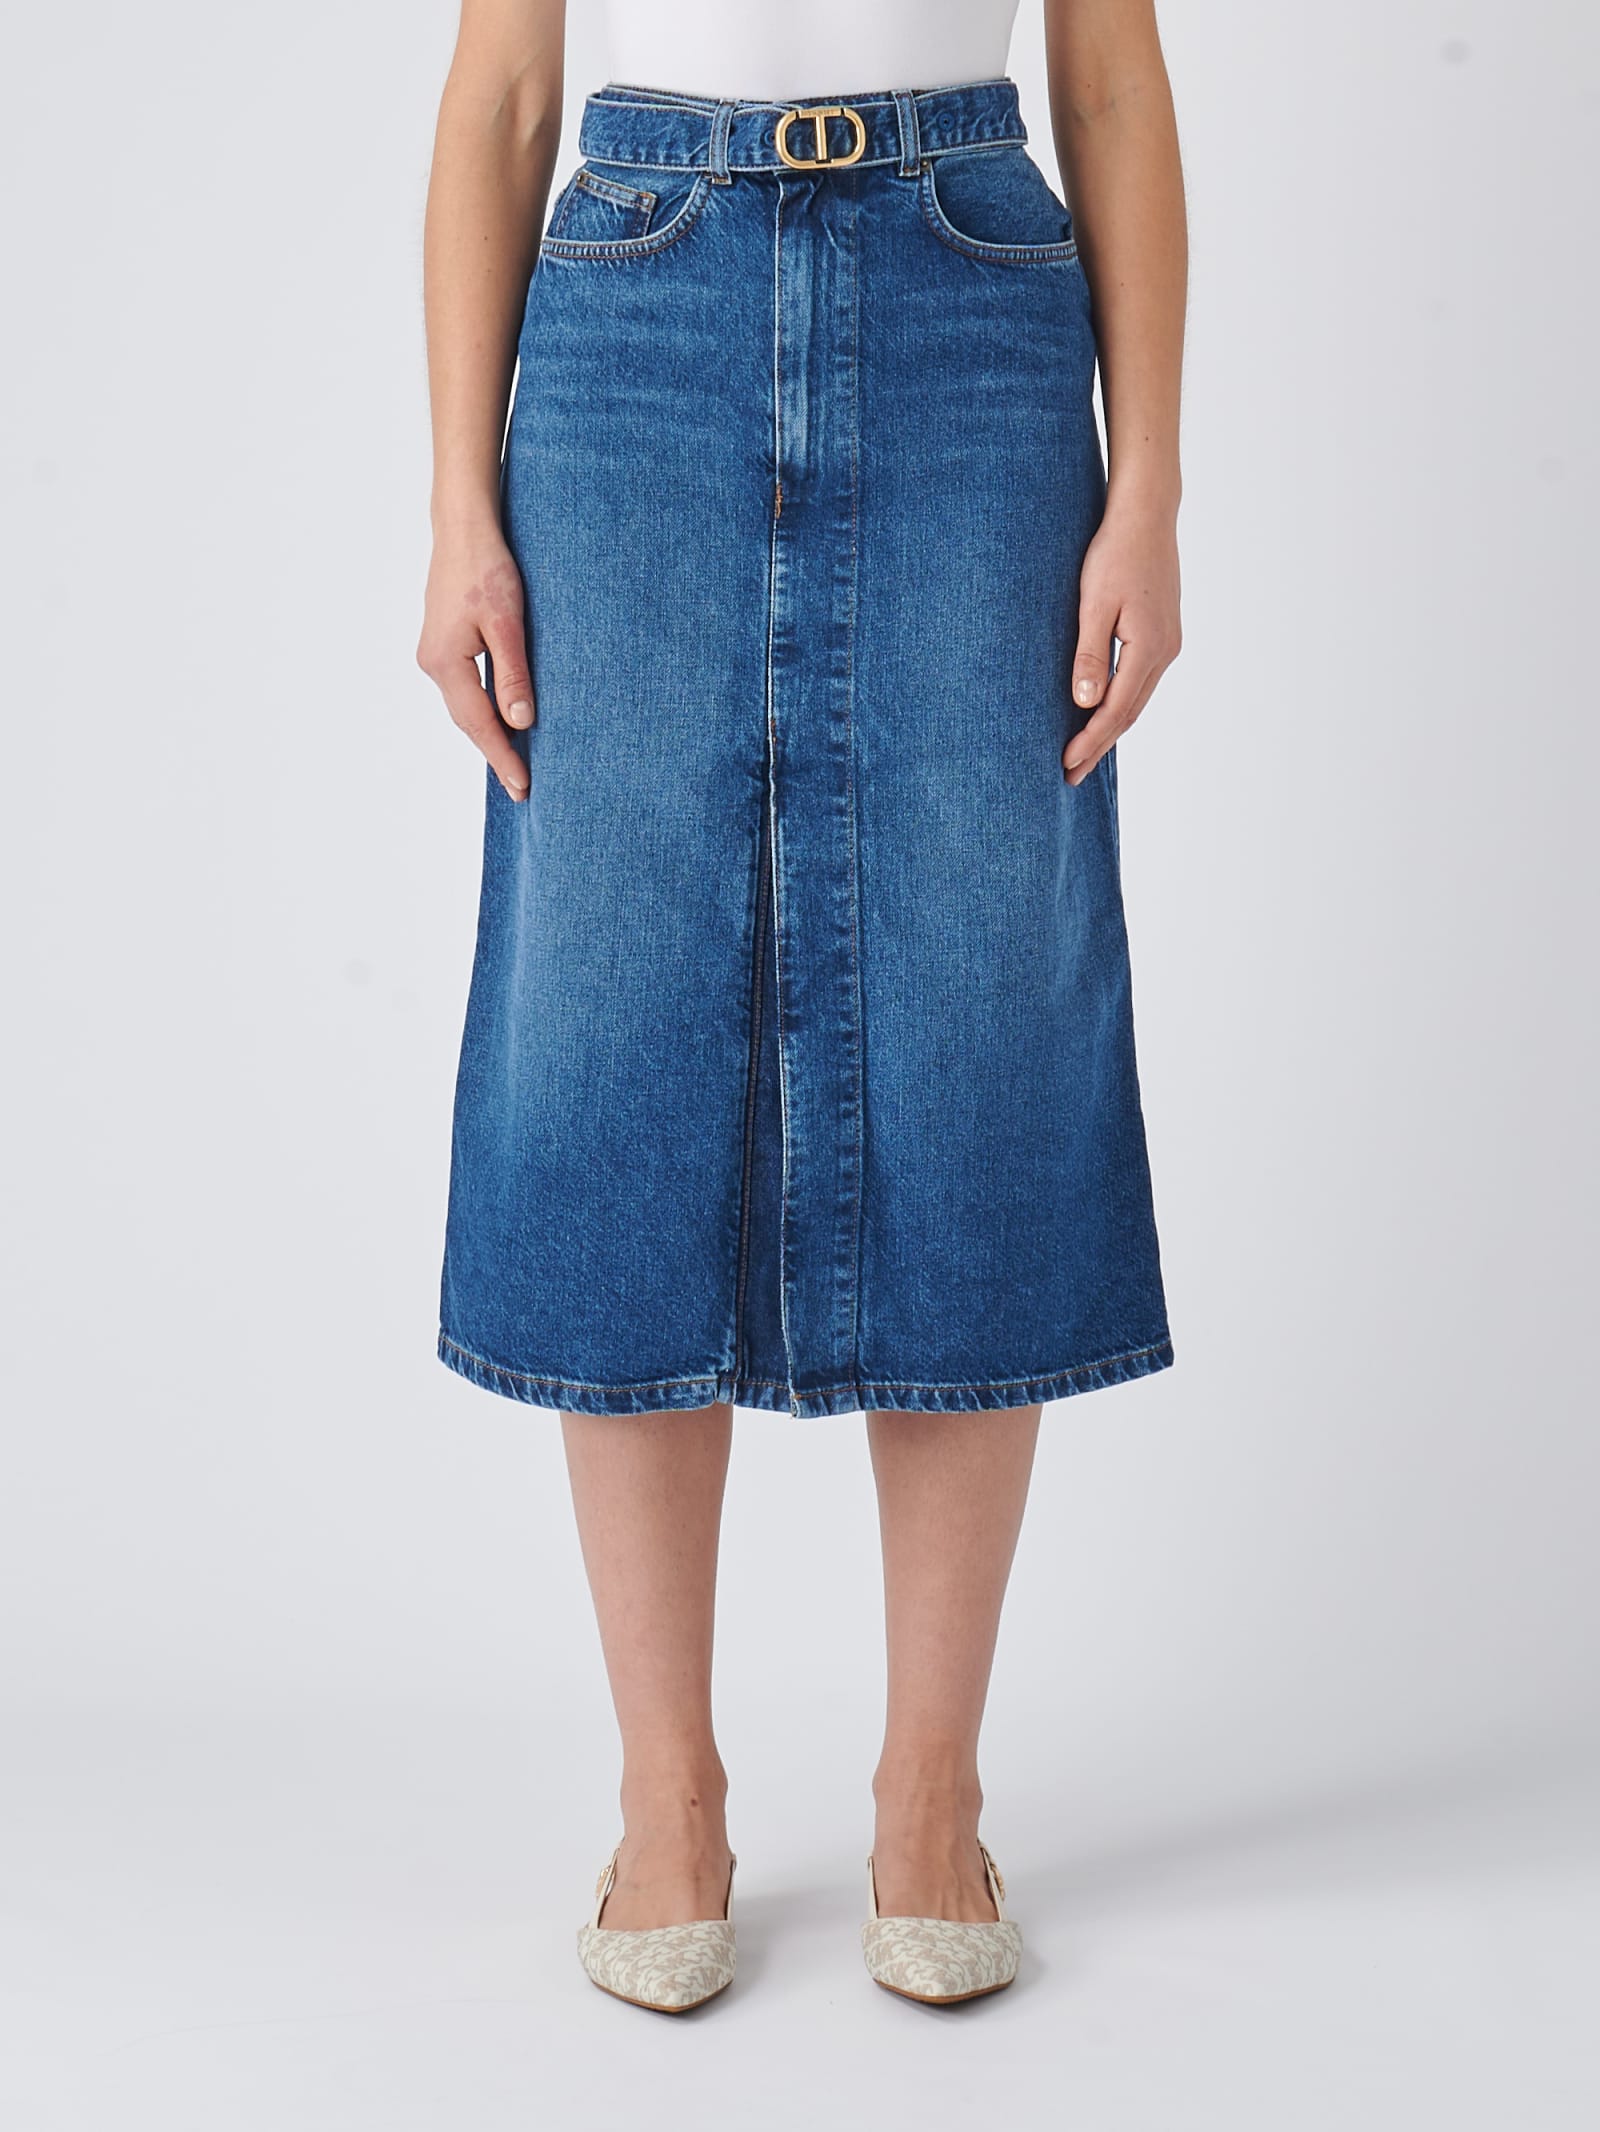 Twinset Cotton Skirt In Denim